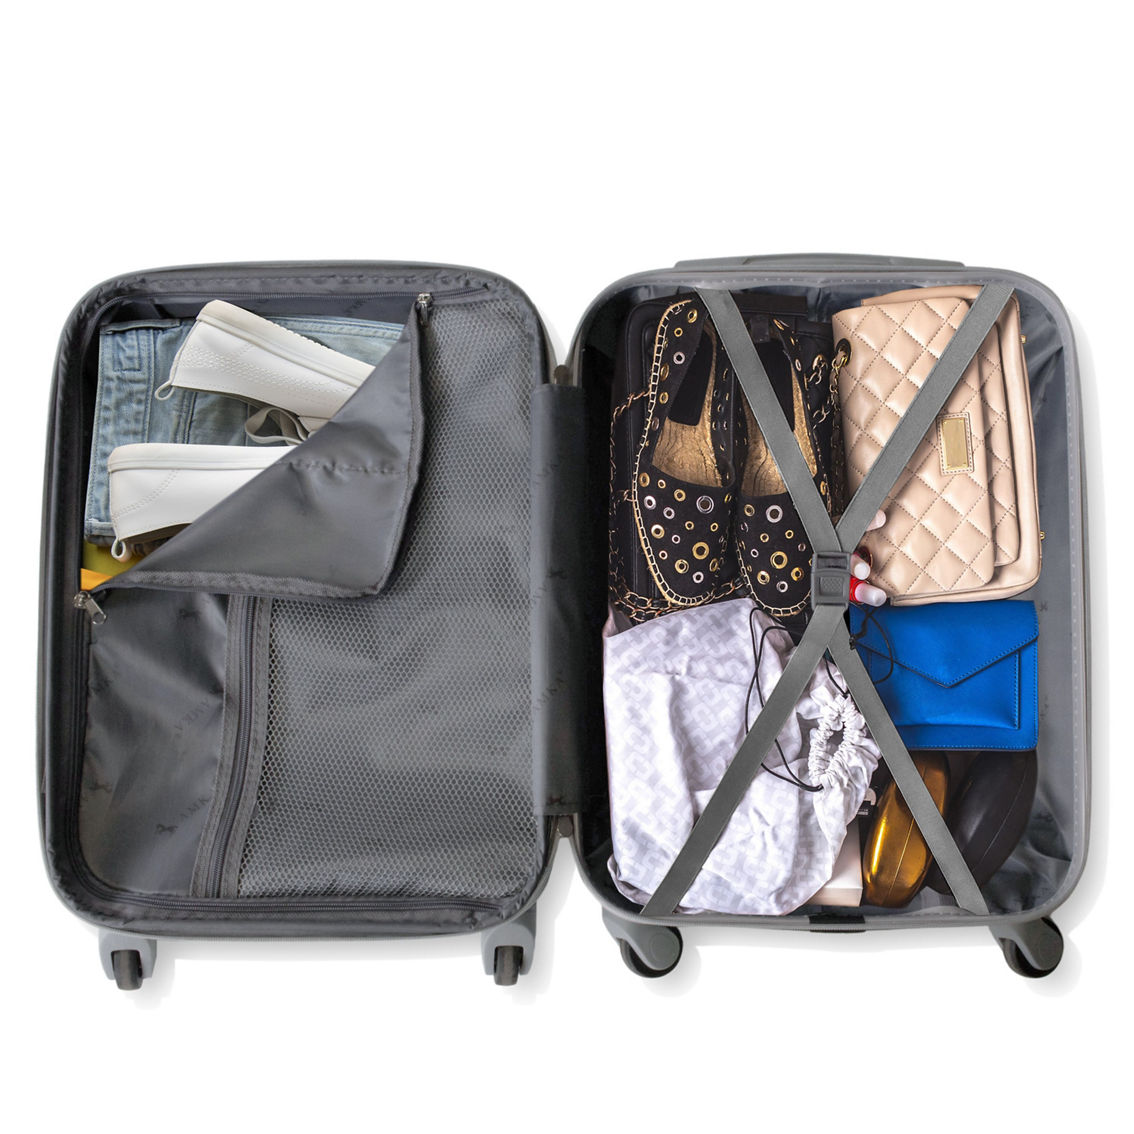 AMKA Gem 2-Pc. Carry-On Hardside Cosmetic Luggage Set - Image 4 of 5